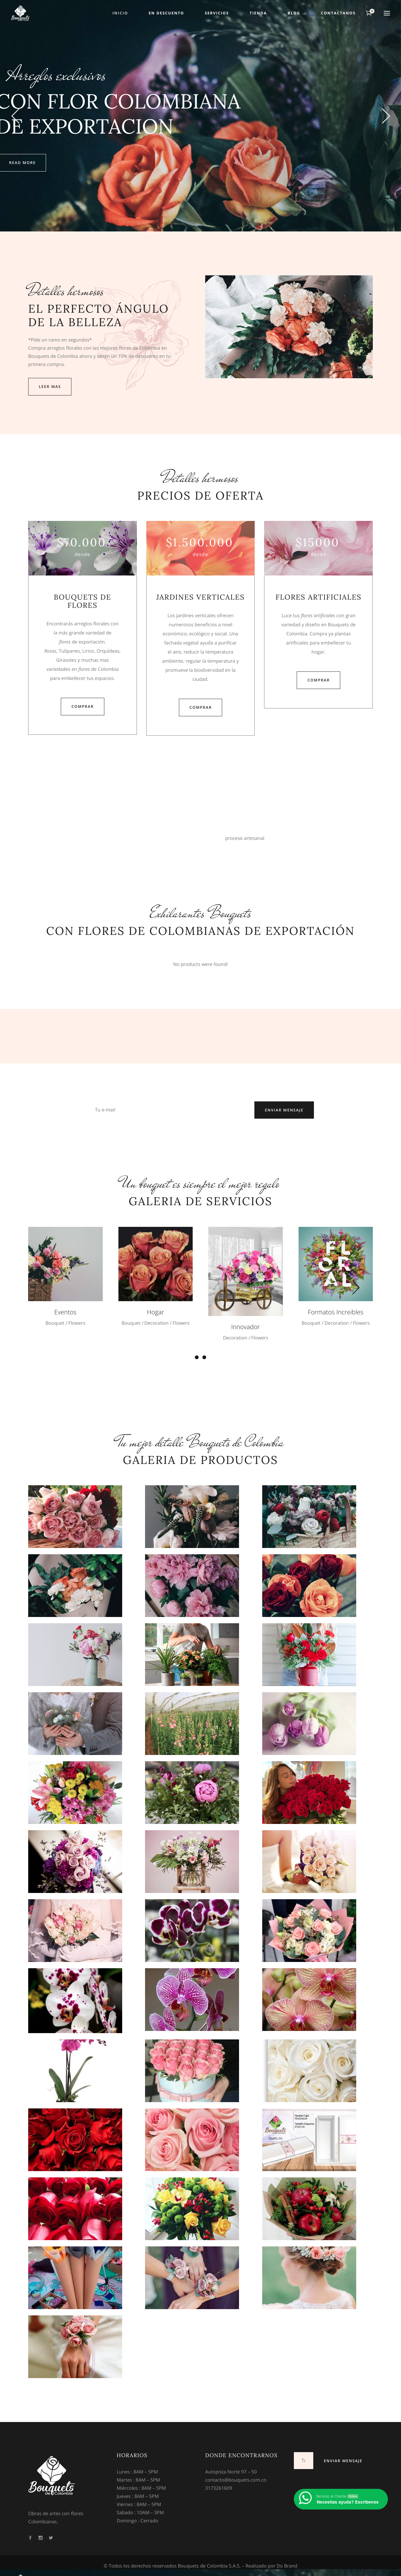 Bouquets de Colombia - Arreglos florales hechos arte